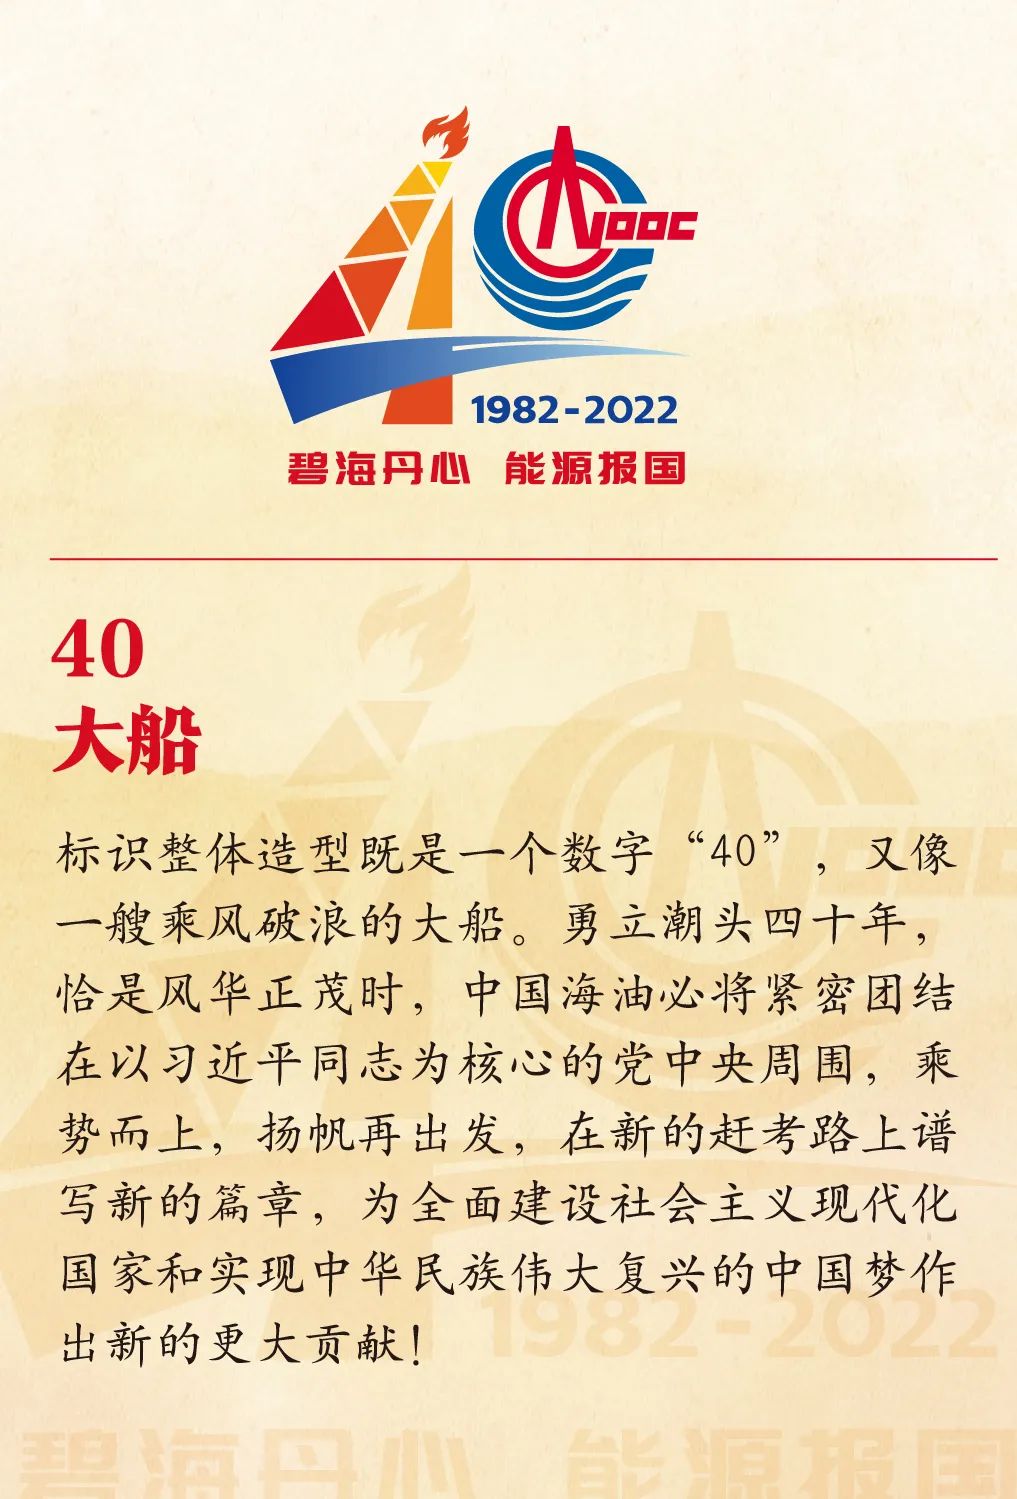 庆祝中国海油成立40周年活动标识正式发布